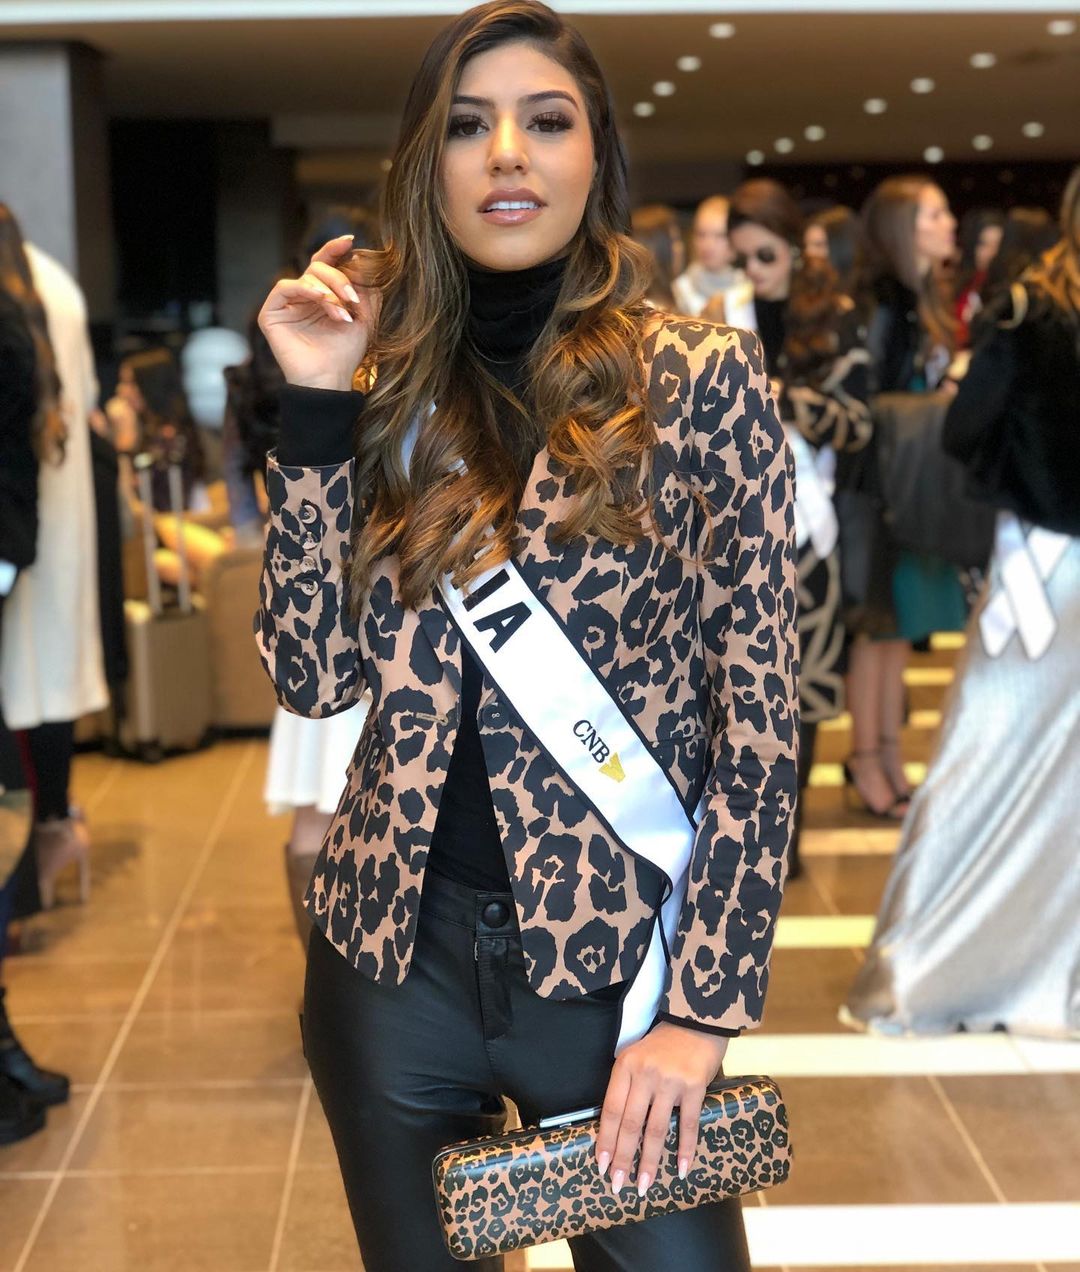 isabelle andrade, top 10 de miss brasil mundo 2019. - Página 3 82913427